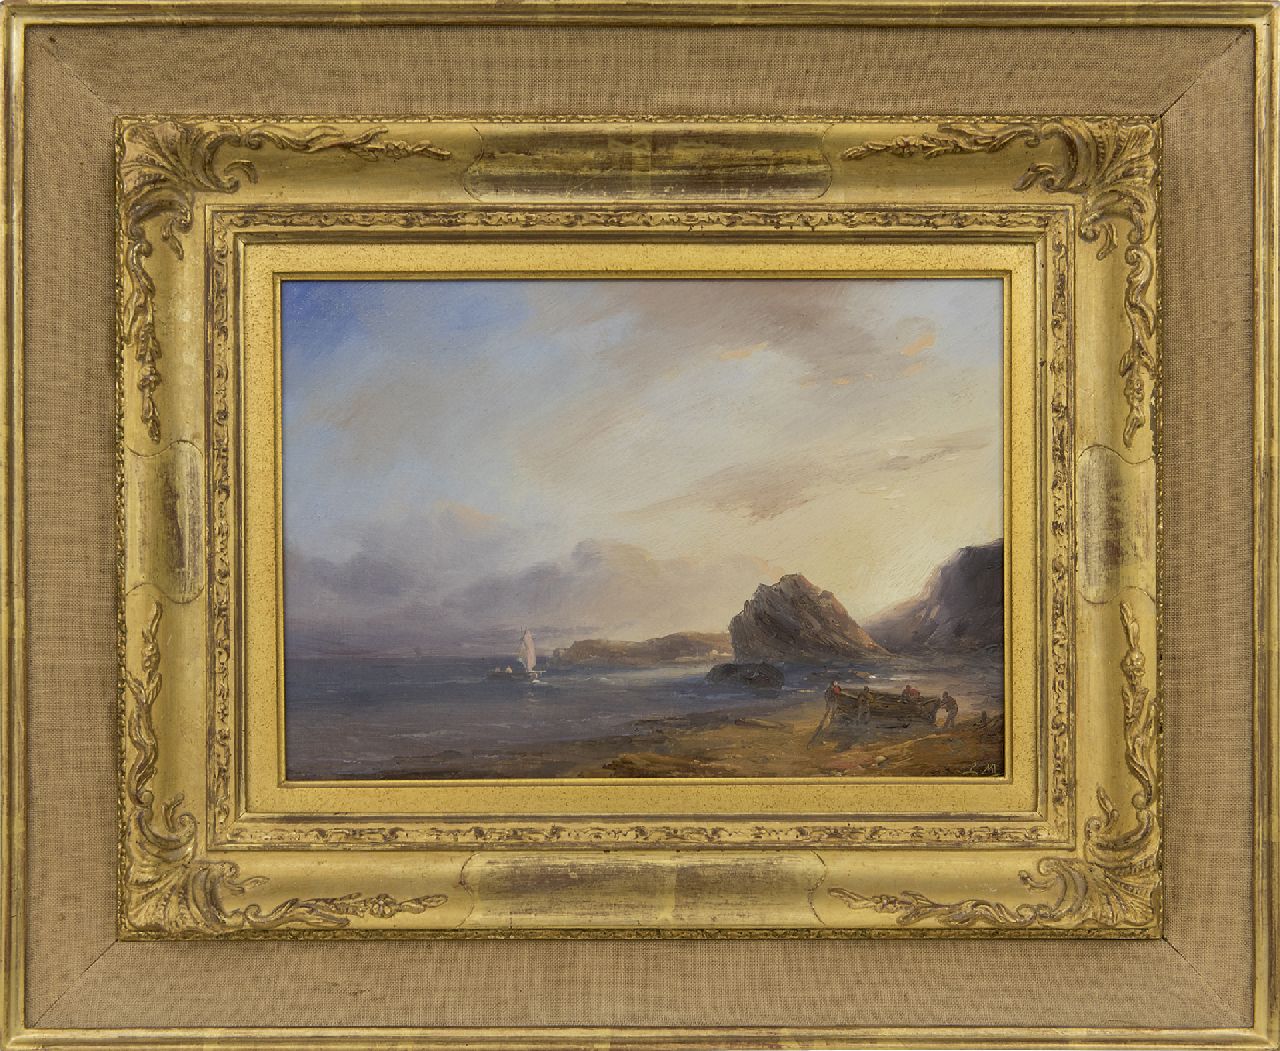 Meijer J.H.L.  | Johan Hendrik 'Louis' Meijer | Paintings offered for sale | Rocky coast, oil on panel 20.0 x 29.0 cm